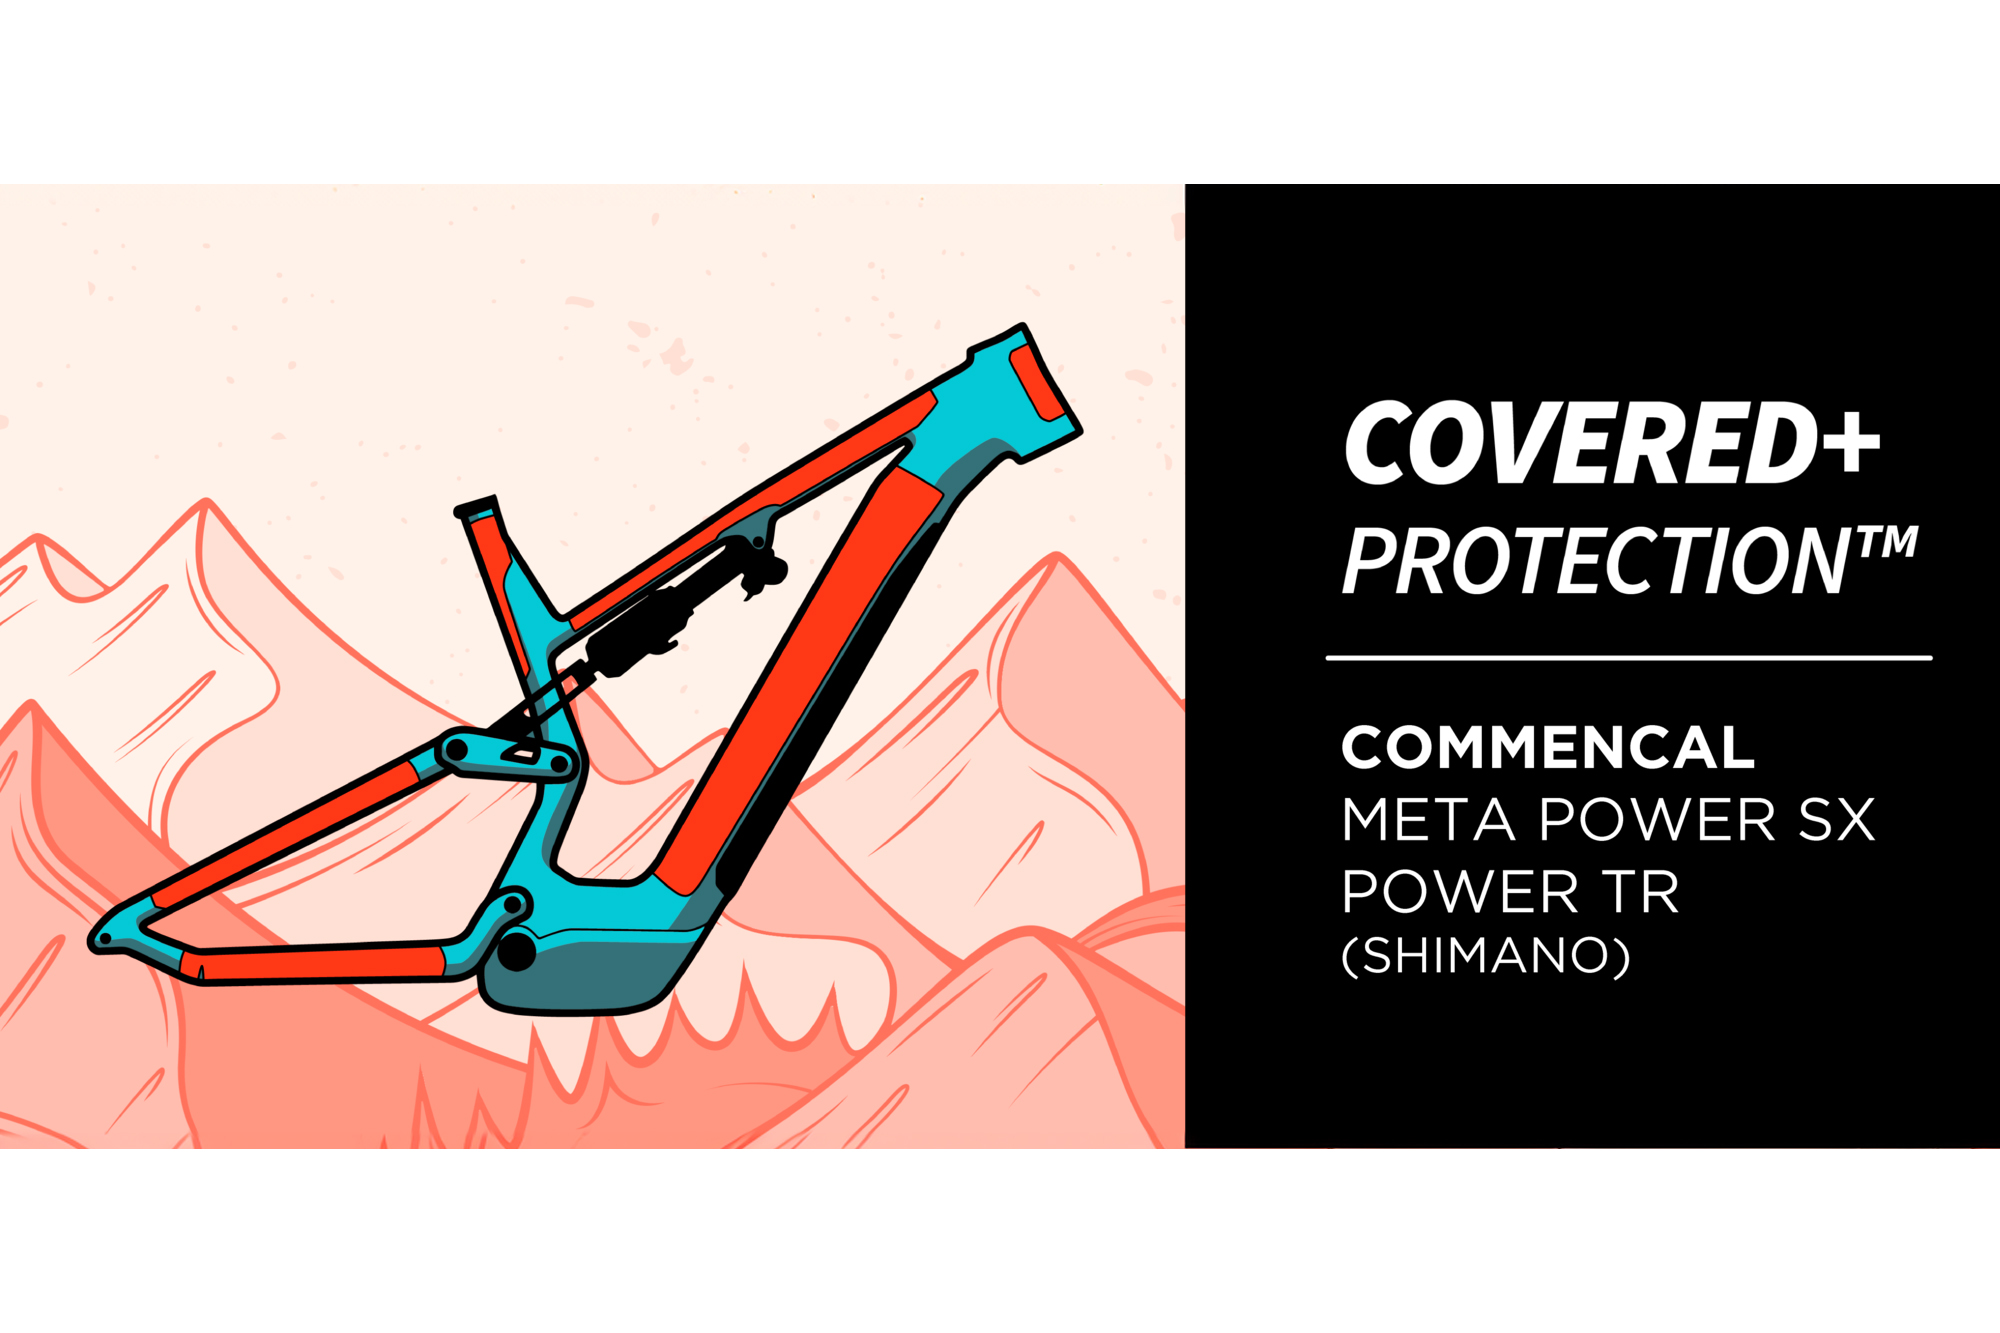 PROTECCIÓN DE CUADRO RIDEWRAP COVERED+ BRILLANTE - META POWER SHIMANO image number null